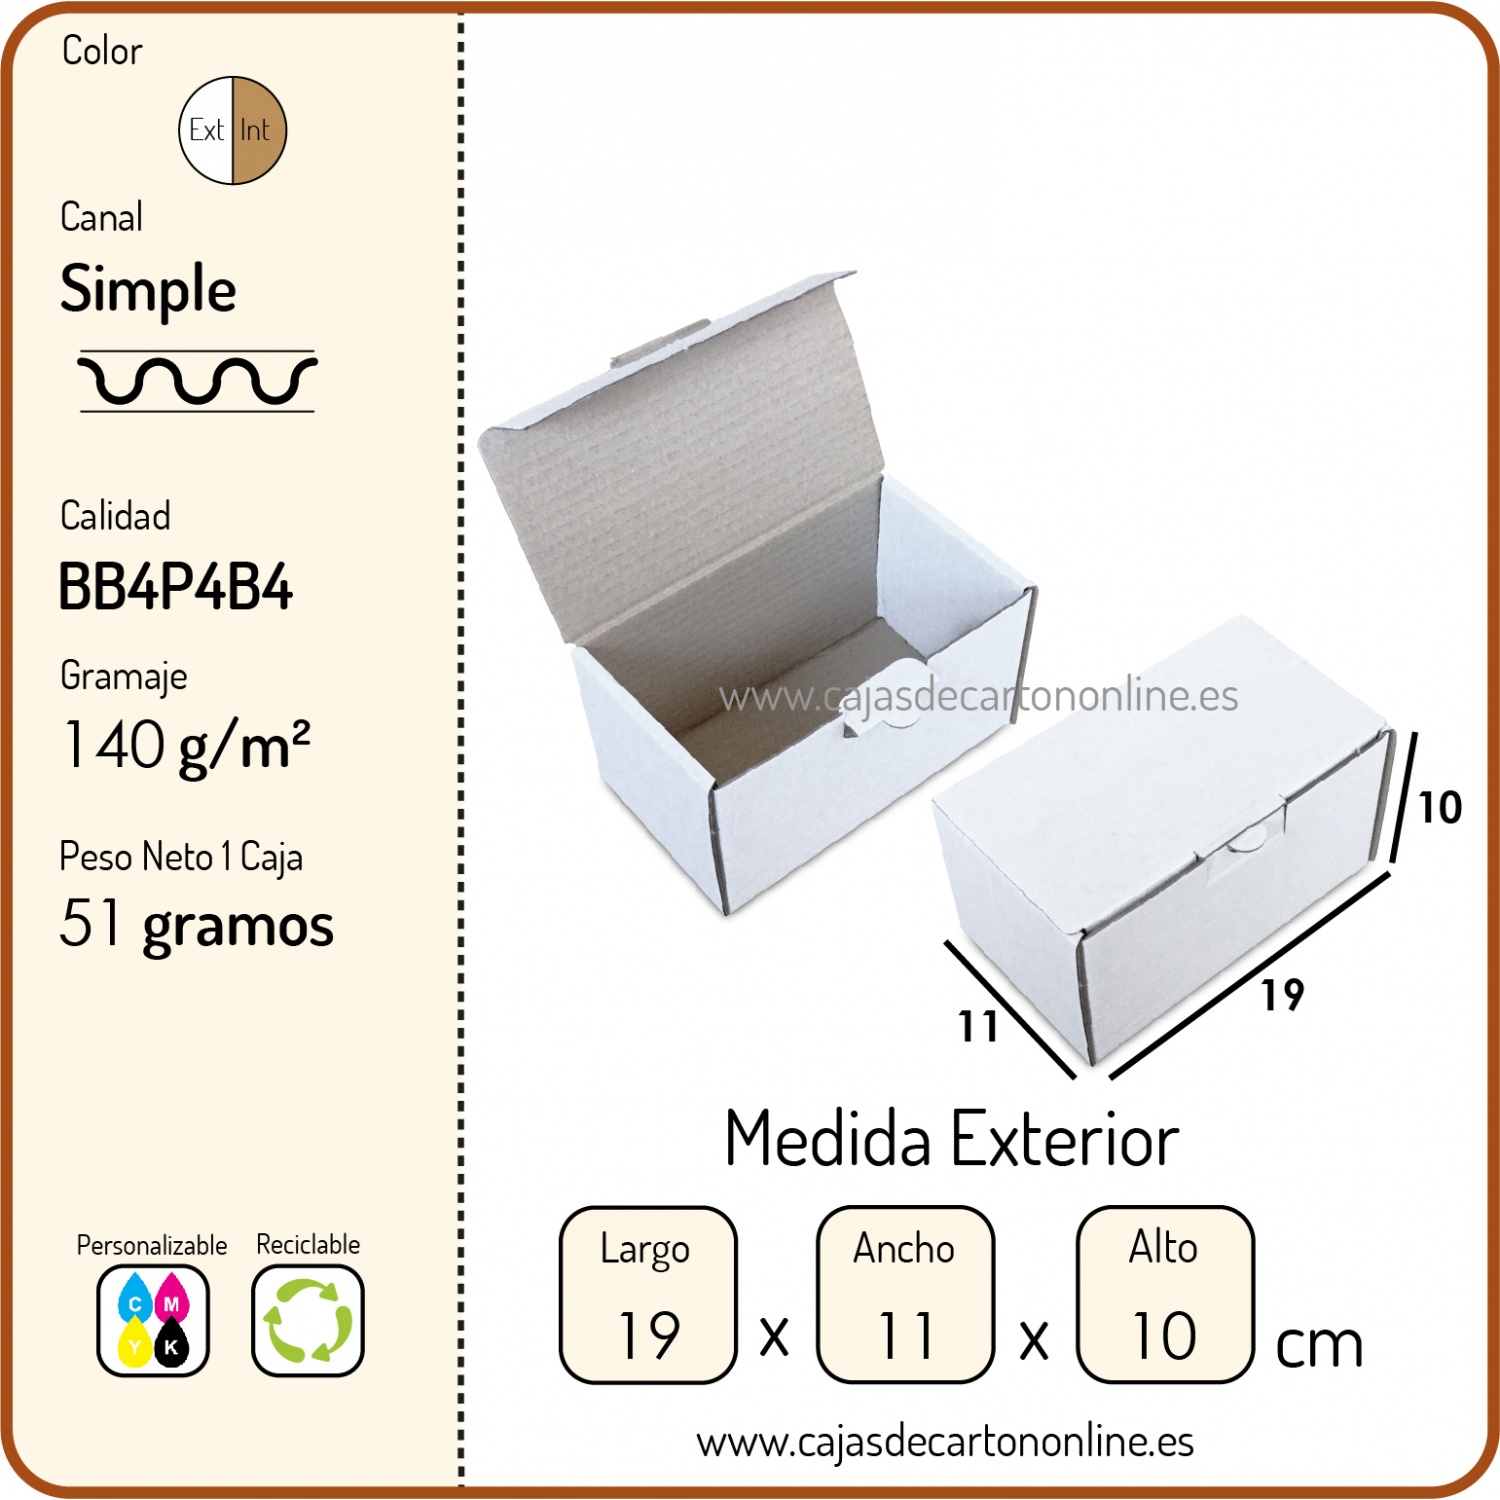 10 unidades DIN A4 304 x 216 x 130-220 mm cartón ondulado ProgressPack Premium PP K14.04 color marrón Caja de envío 